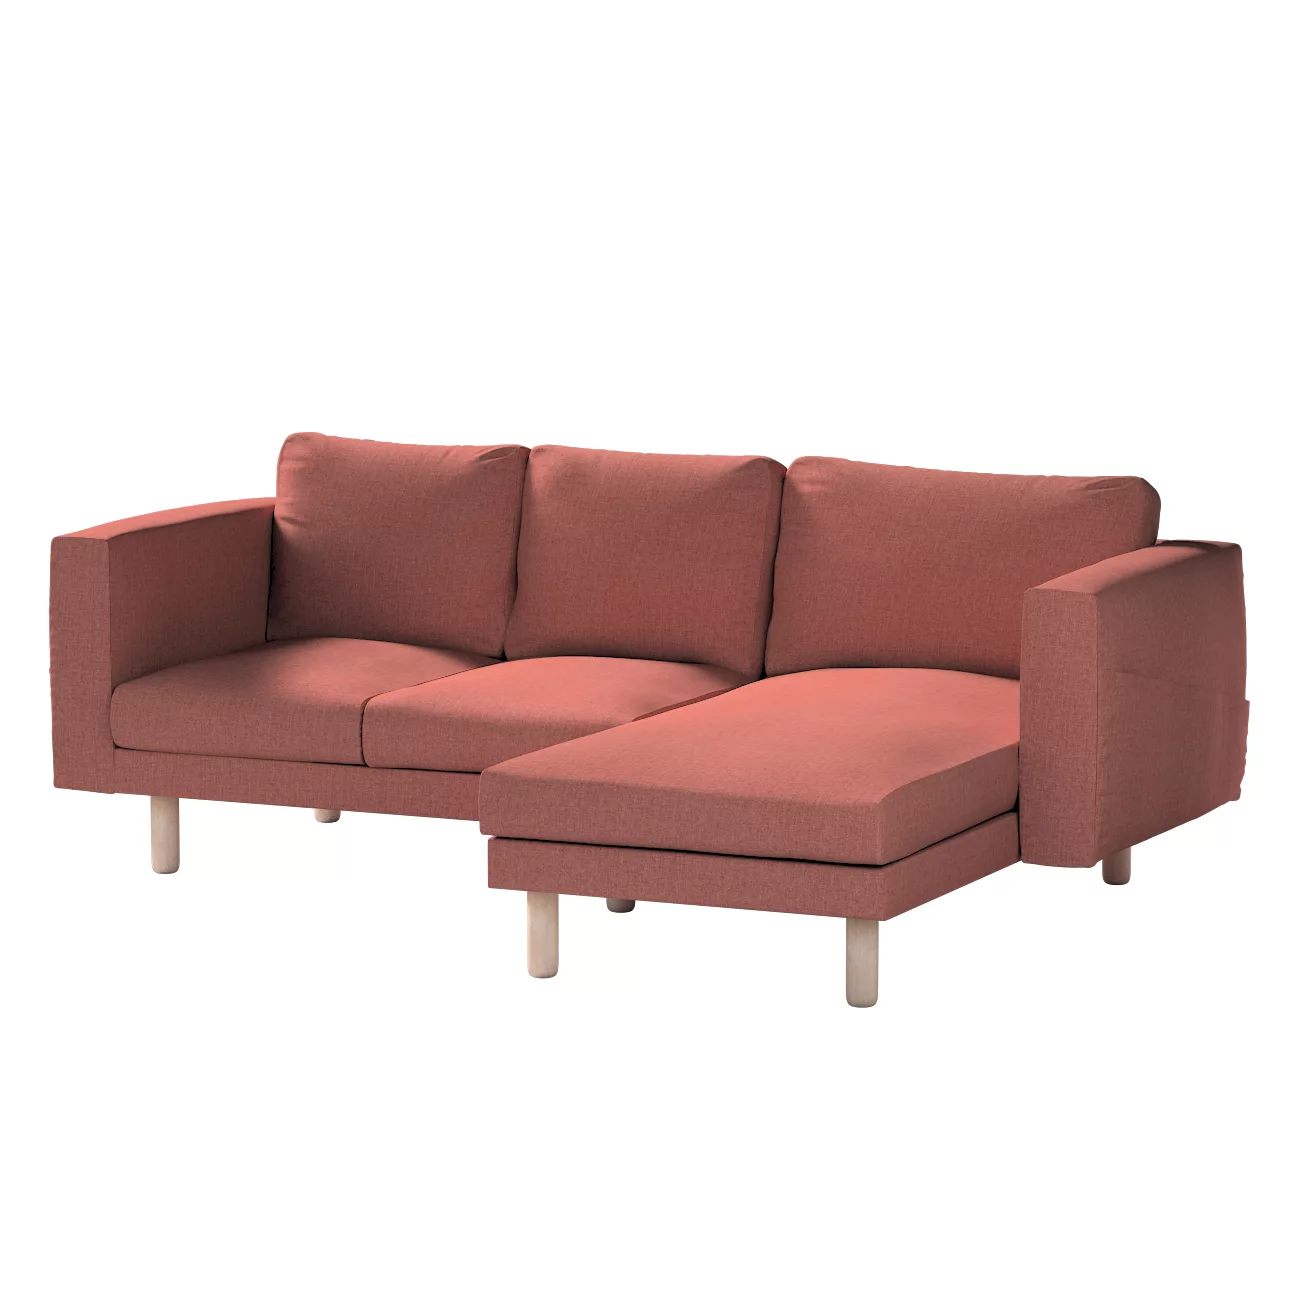 Bezug für Norsborg 3-Sitzer Sofa mit Recamiere, cognac braun, Norsborg Bezu günstig online kaufen